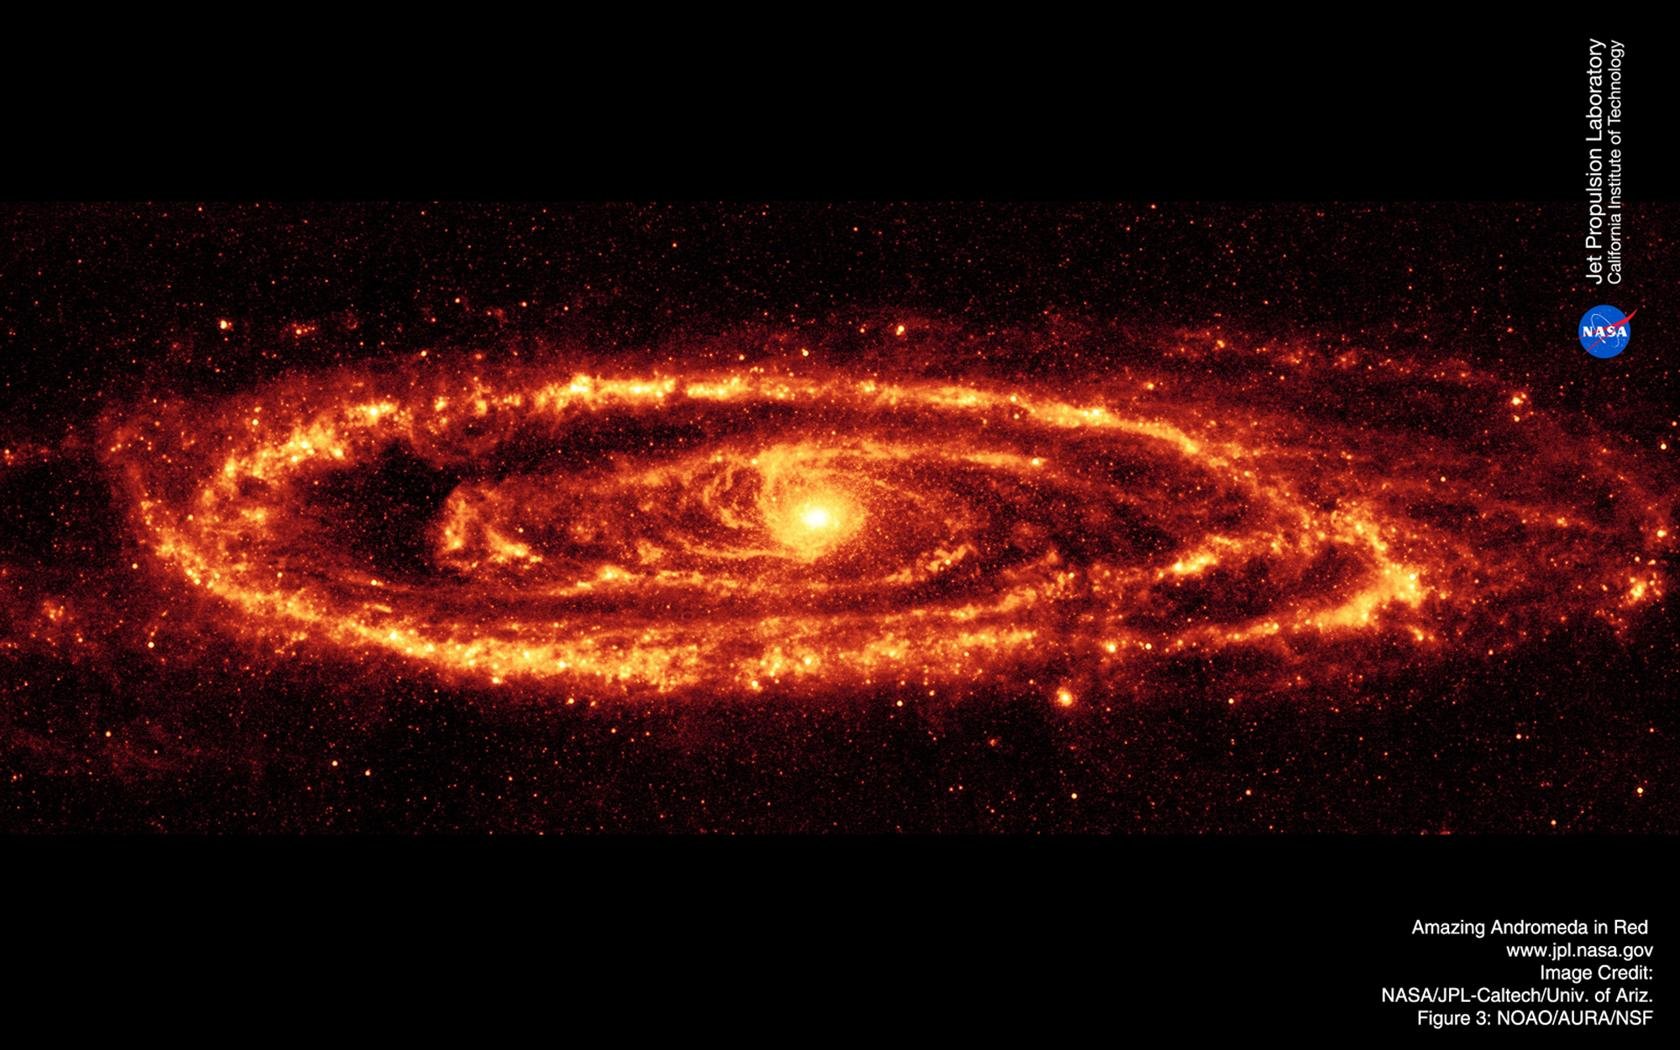 37 Nasa Andromeda Galaxy Wallpaper On Wallpapersafari